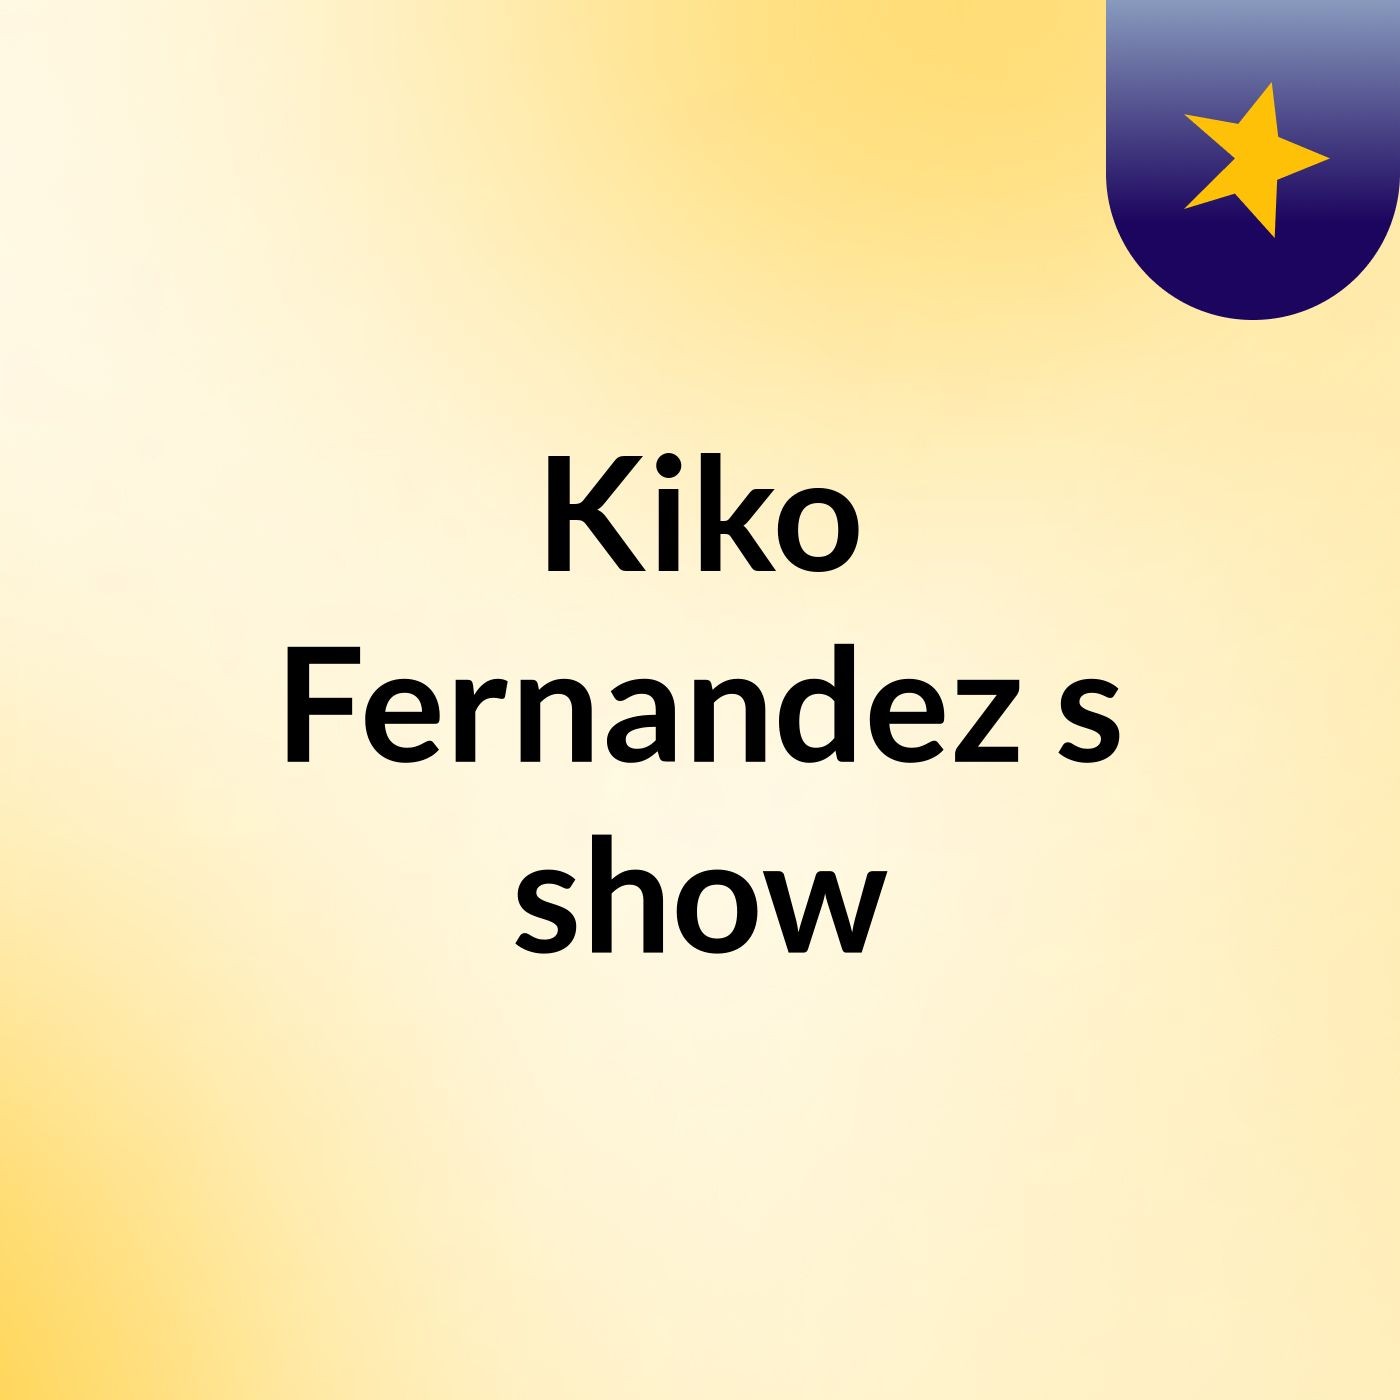 Kiko Fernandez's show